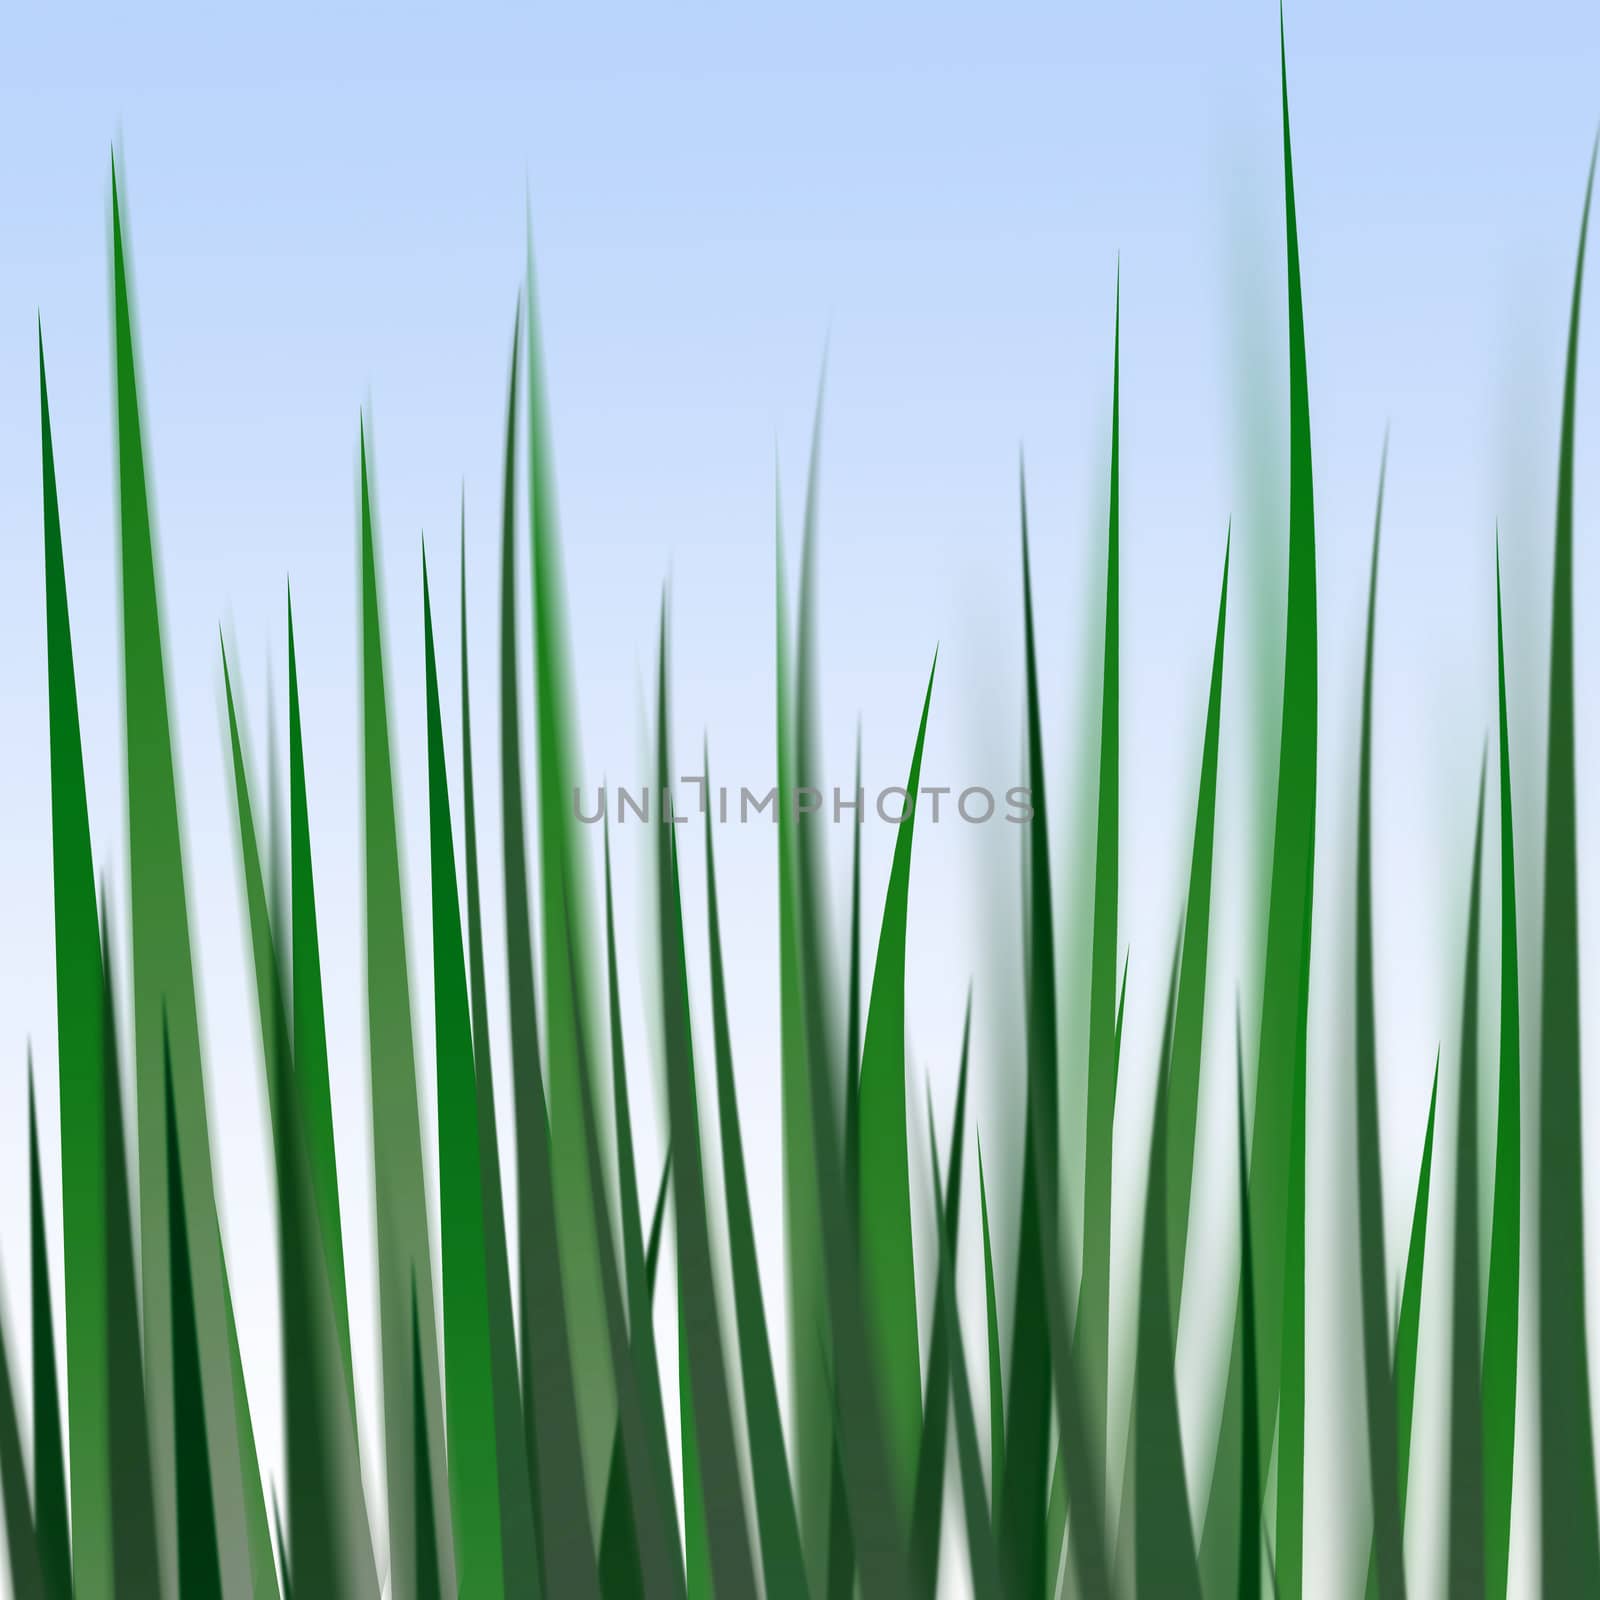 Grass illustration by Kamensky